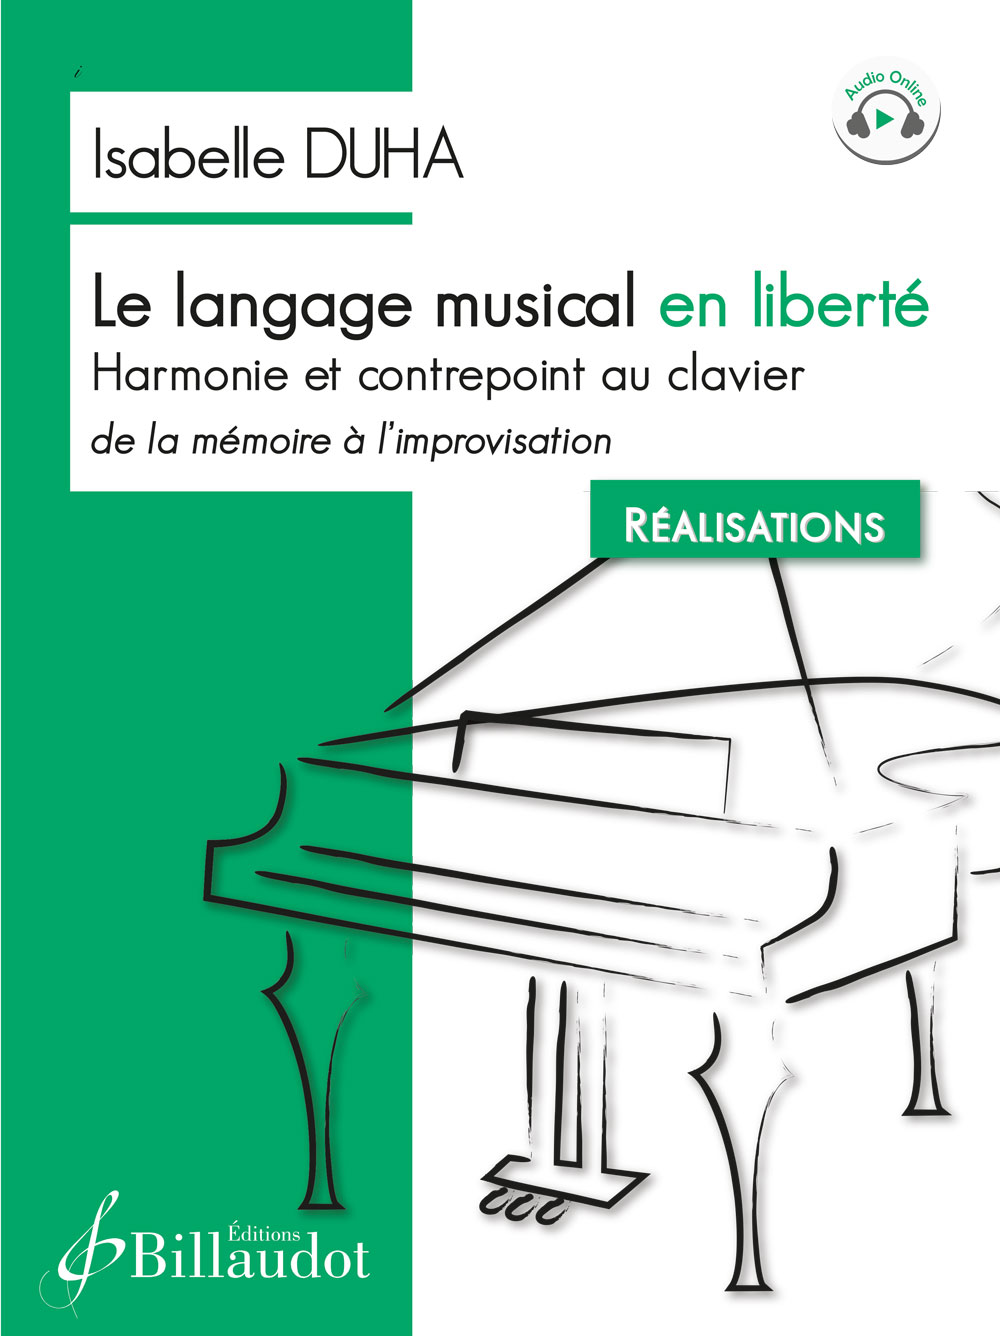 Le langage musical en liberté - Harmonie et contrepoint au clavier, de la mémoire à l?improvisation - Réalisations (DUHA ISABELLE)